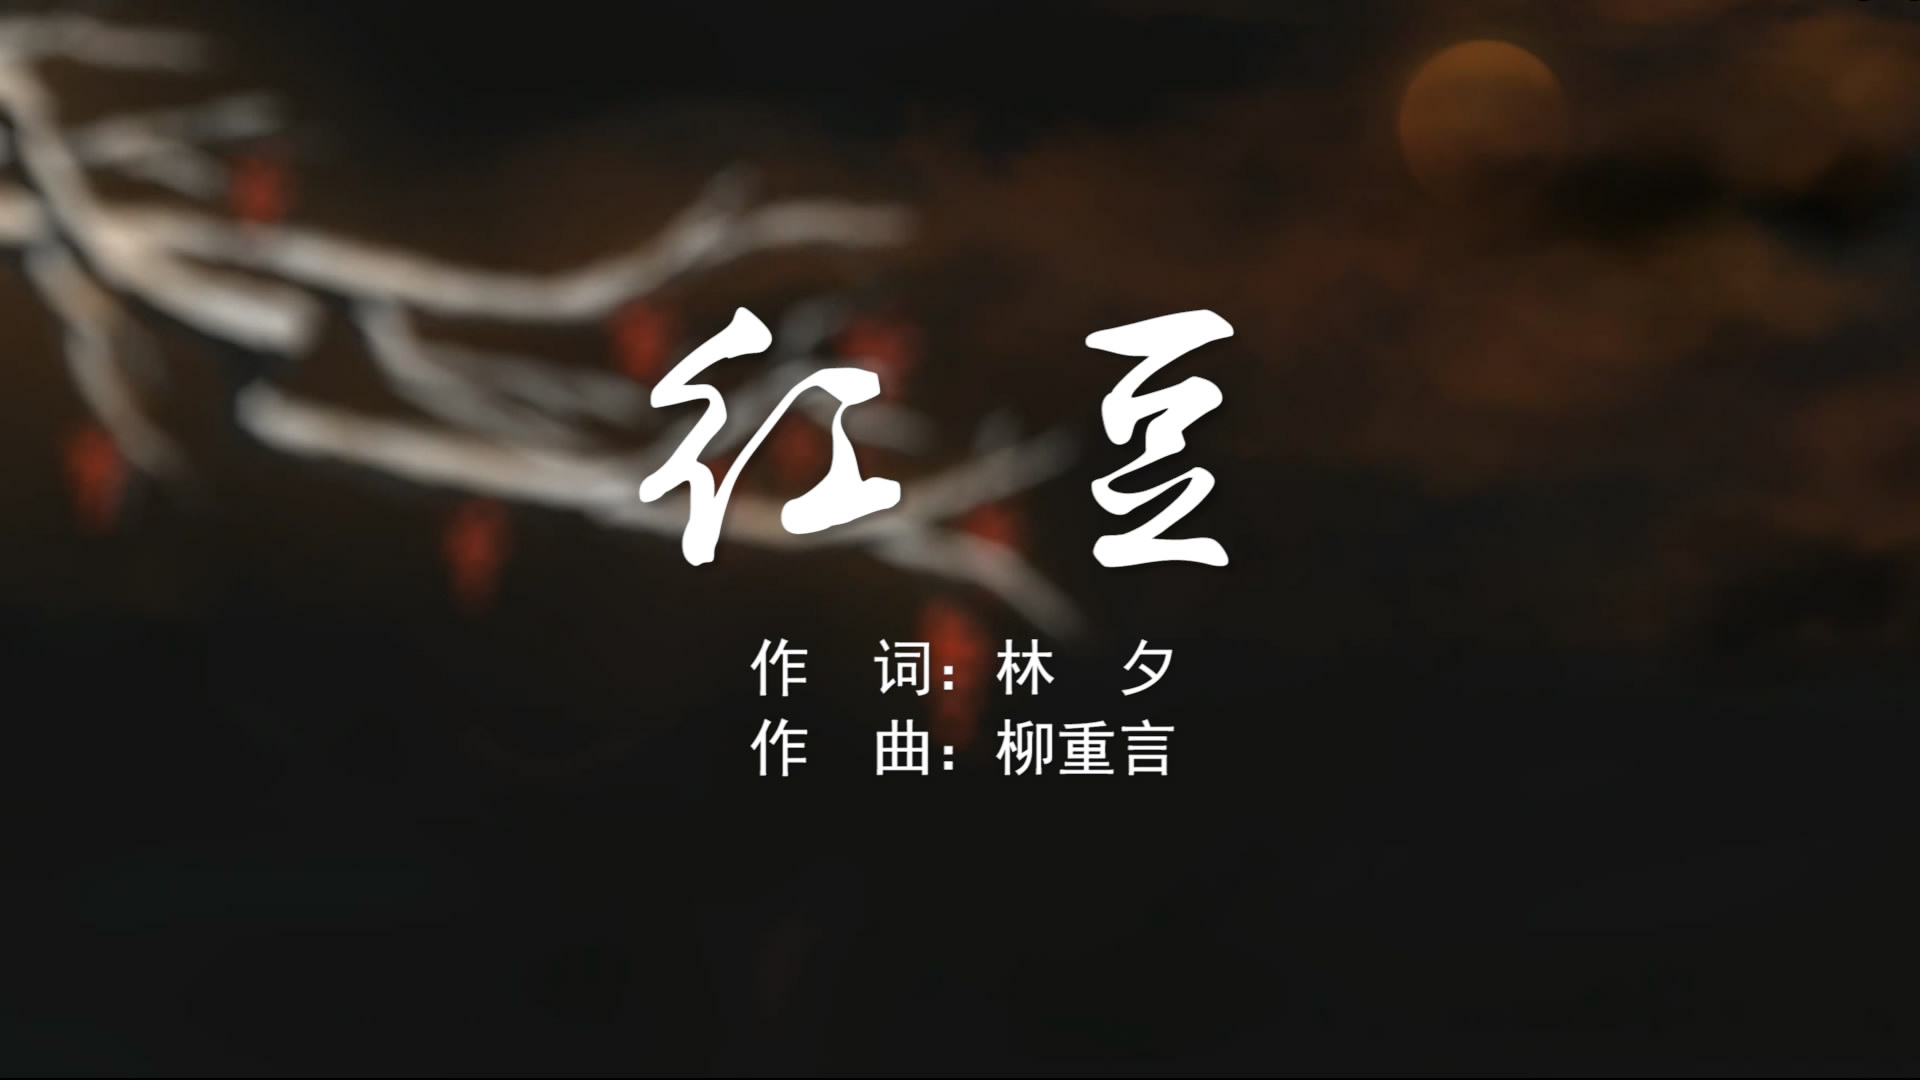 红豆 王菲MV字幕配乐伴奏舞台演出LED背景大屏幕